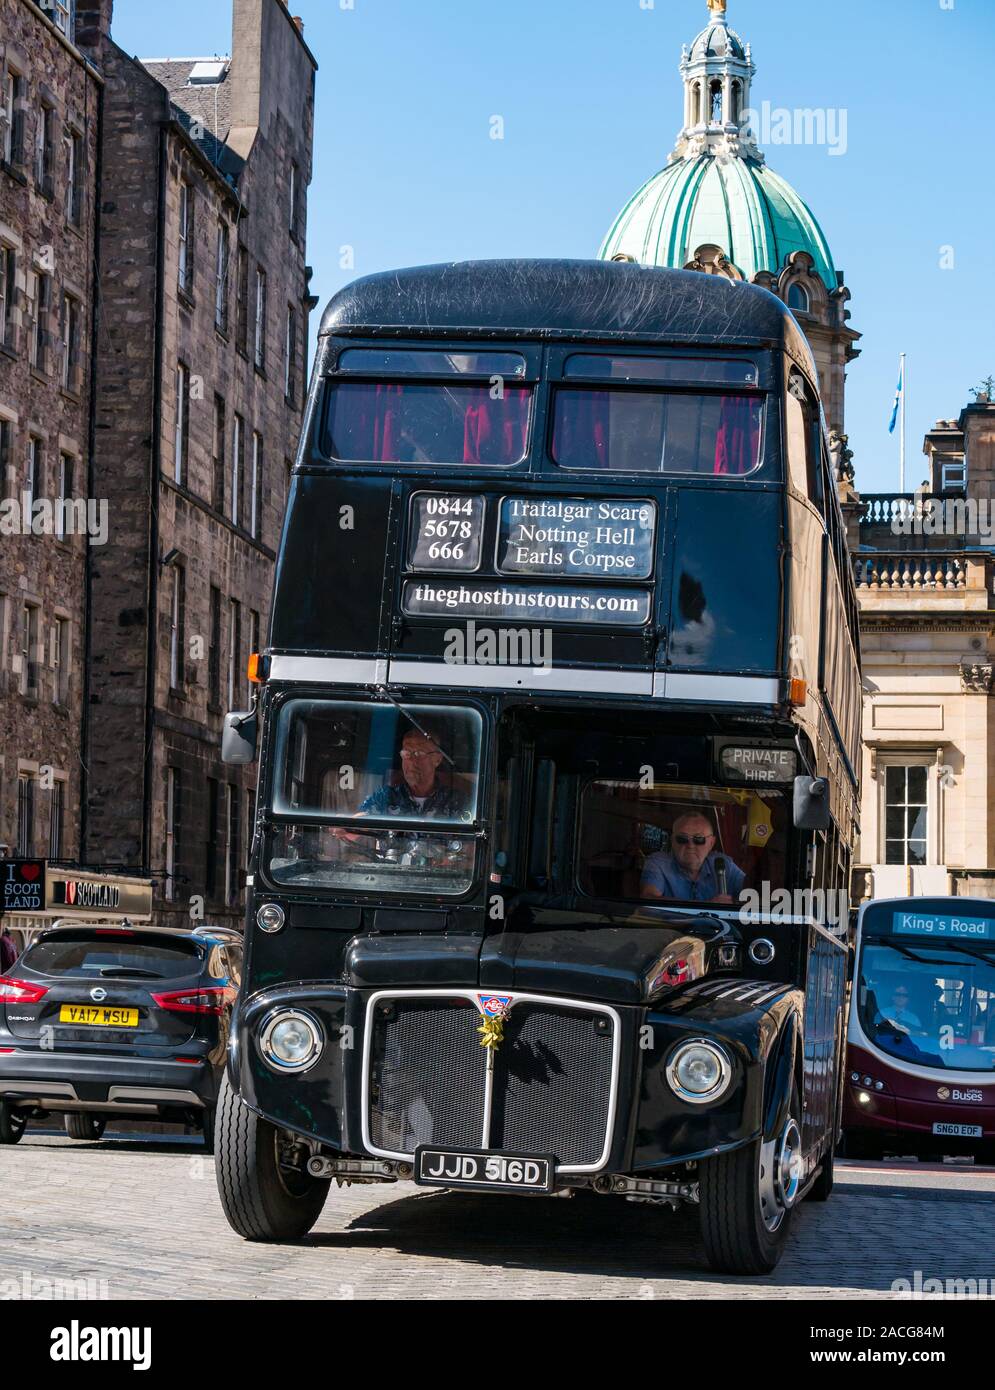 Ghostbusters tours black London tourist bus, The Mound, Edinburgh, Scotland, UK Stock Photo